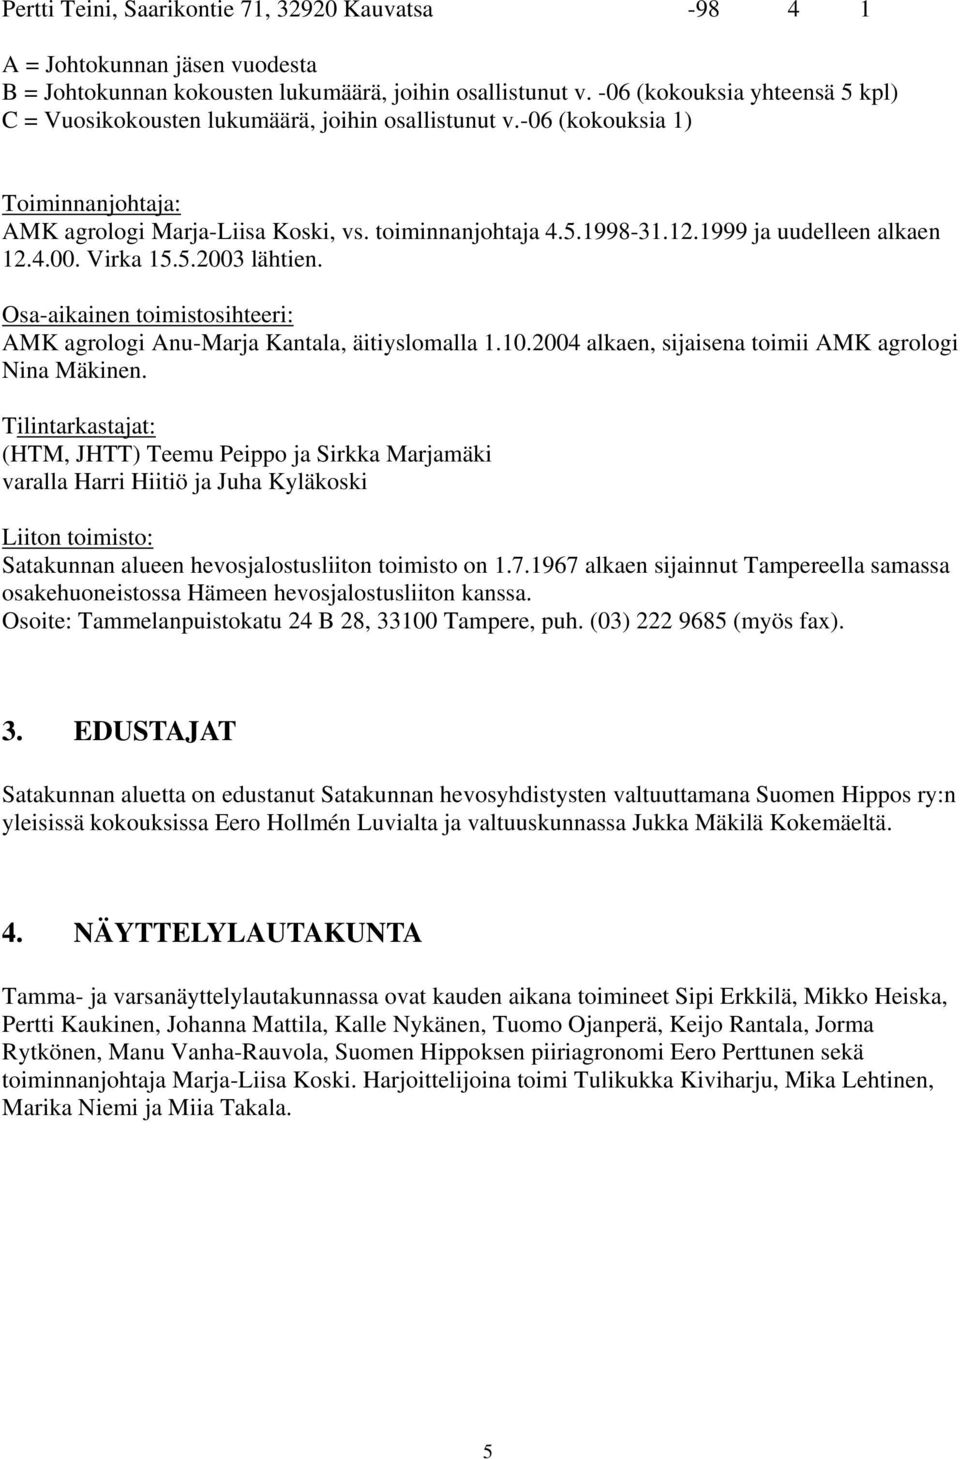 1999 ja uudelleen alkaen 12.4.00. Virka 15.5.2003 lähtien. Osa-aikainen toimistosihteeri: AMK agrologi Anu-Marja Kantala, äitiyslomalla 1.10.2004 alkaen, sijaisena toimii AMK agrologi Nina Mäkinen.